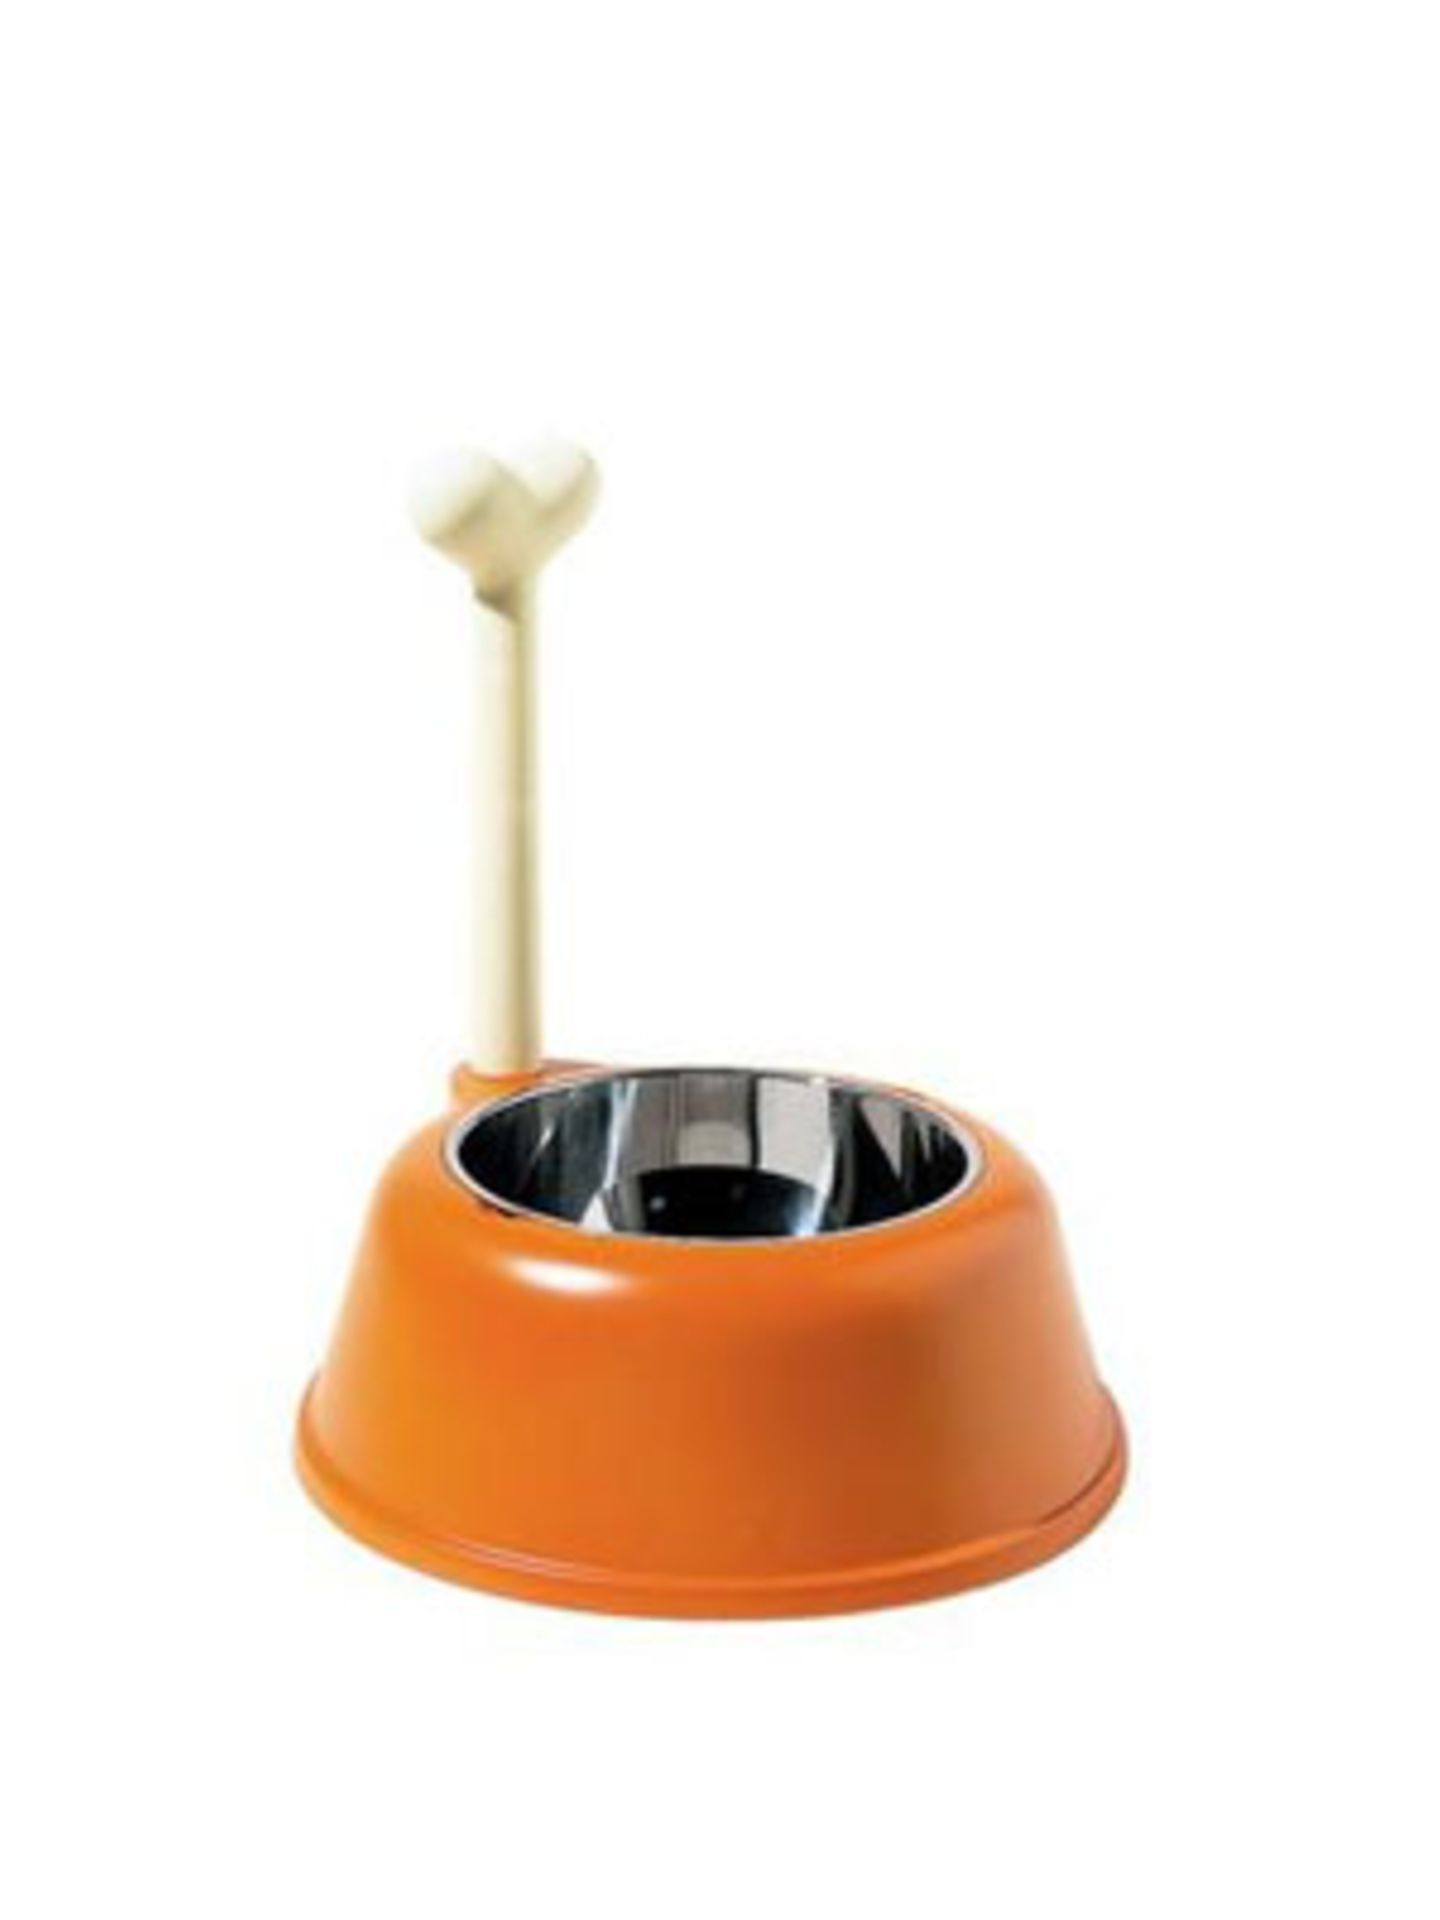 Praktisch: Am Knochen lässt sich dieser Napf bequem hochheben. Eine hygienische Sache! Von Alessi, um 55 Euro. Über Design3000.